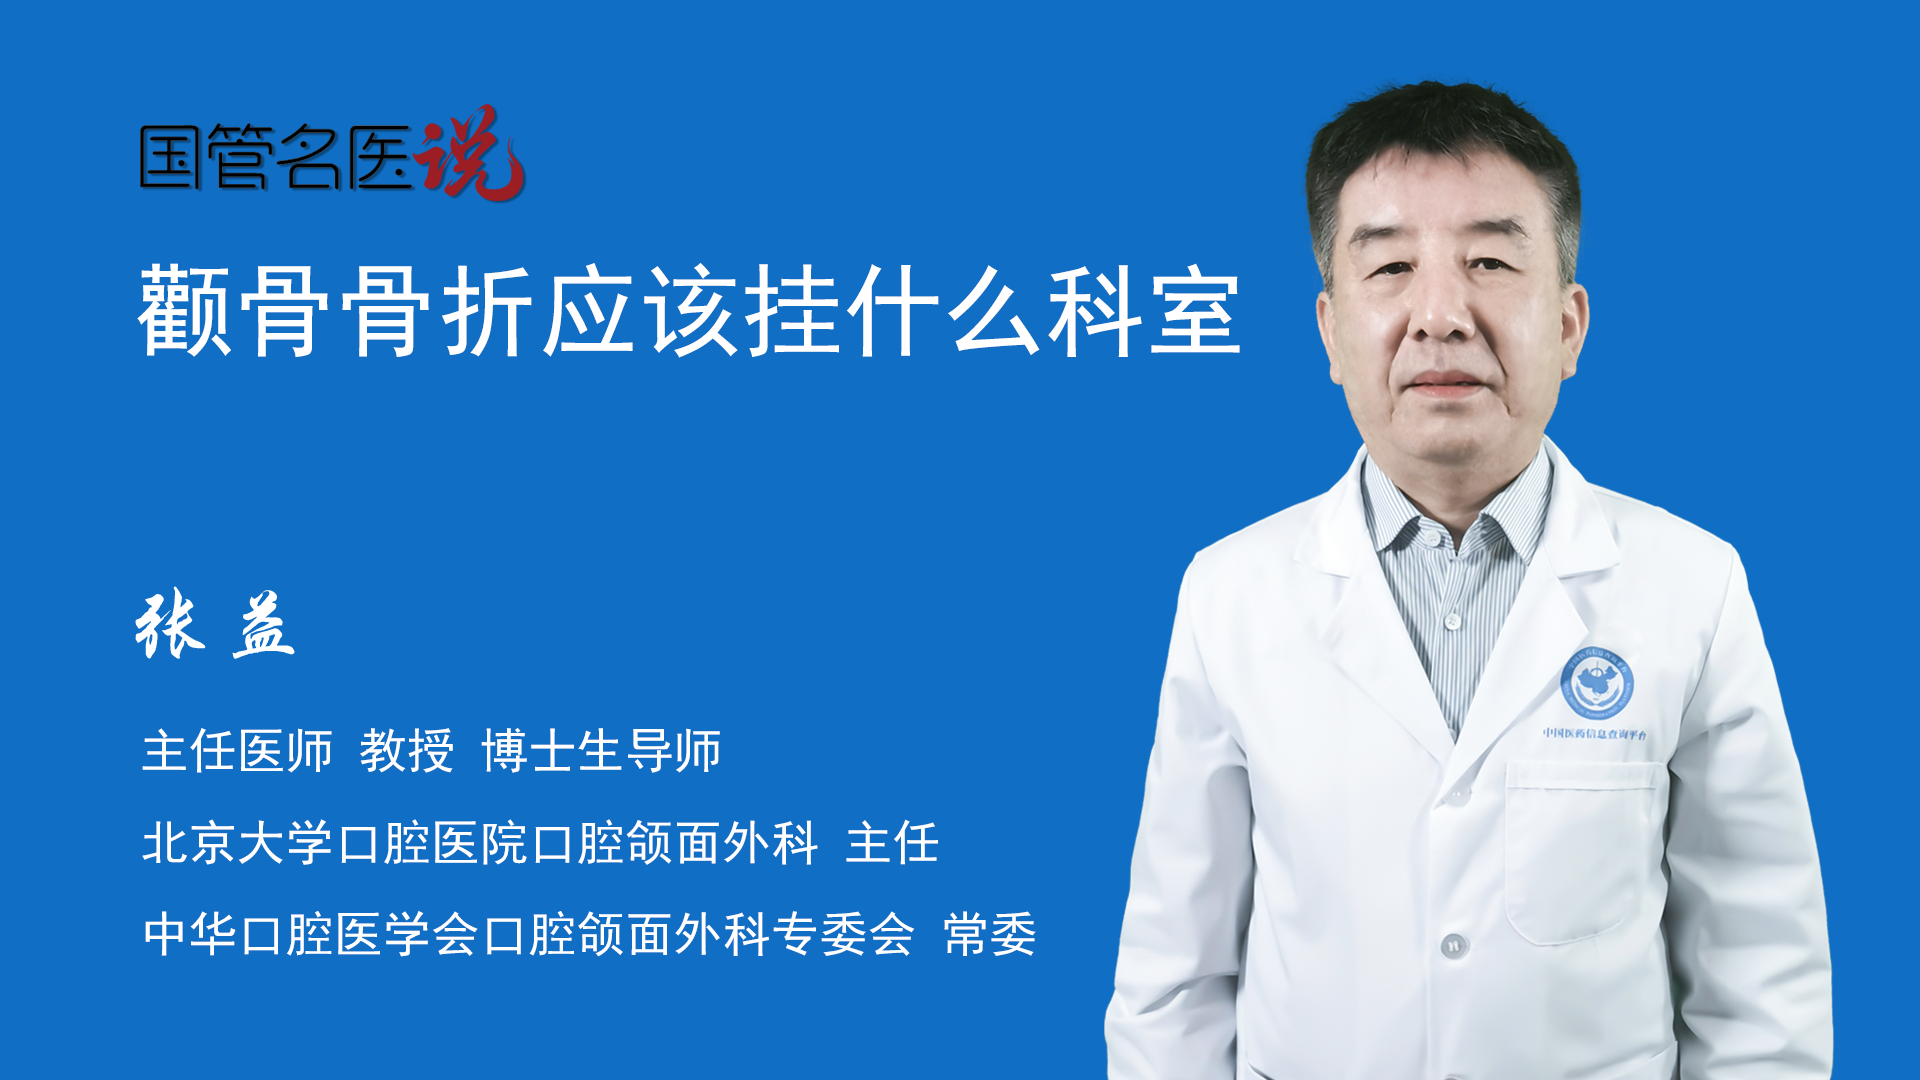 包含北京大学口腔医院热门科室说到必须做到的词条